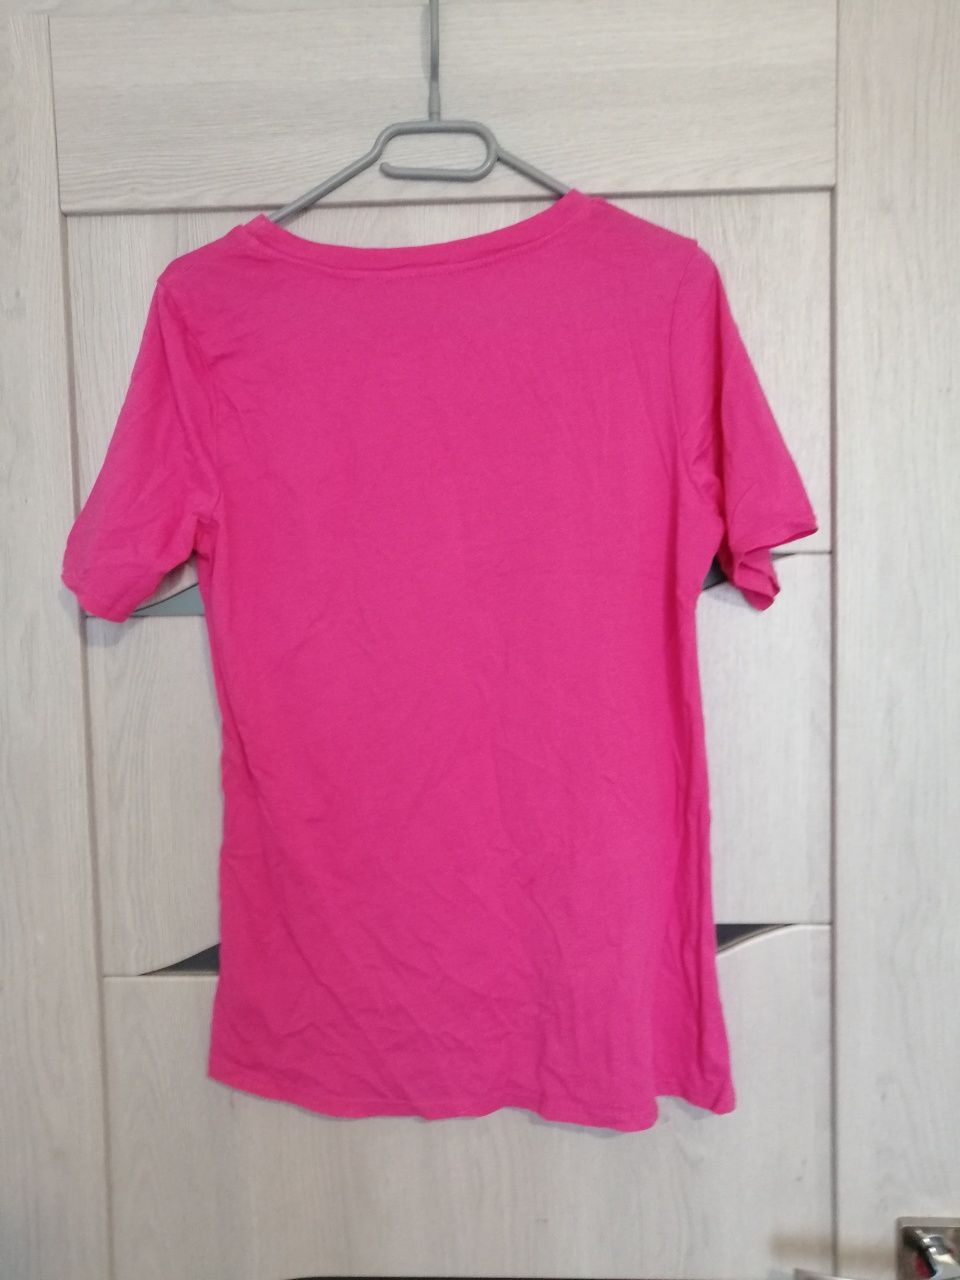 Nowy t-shirt podkoszulka różowa tłoczona gwiazda fuksja s m bawełniana